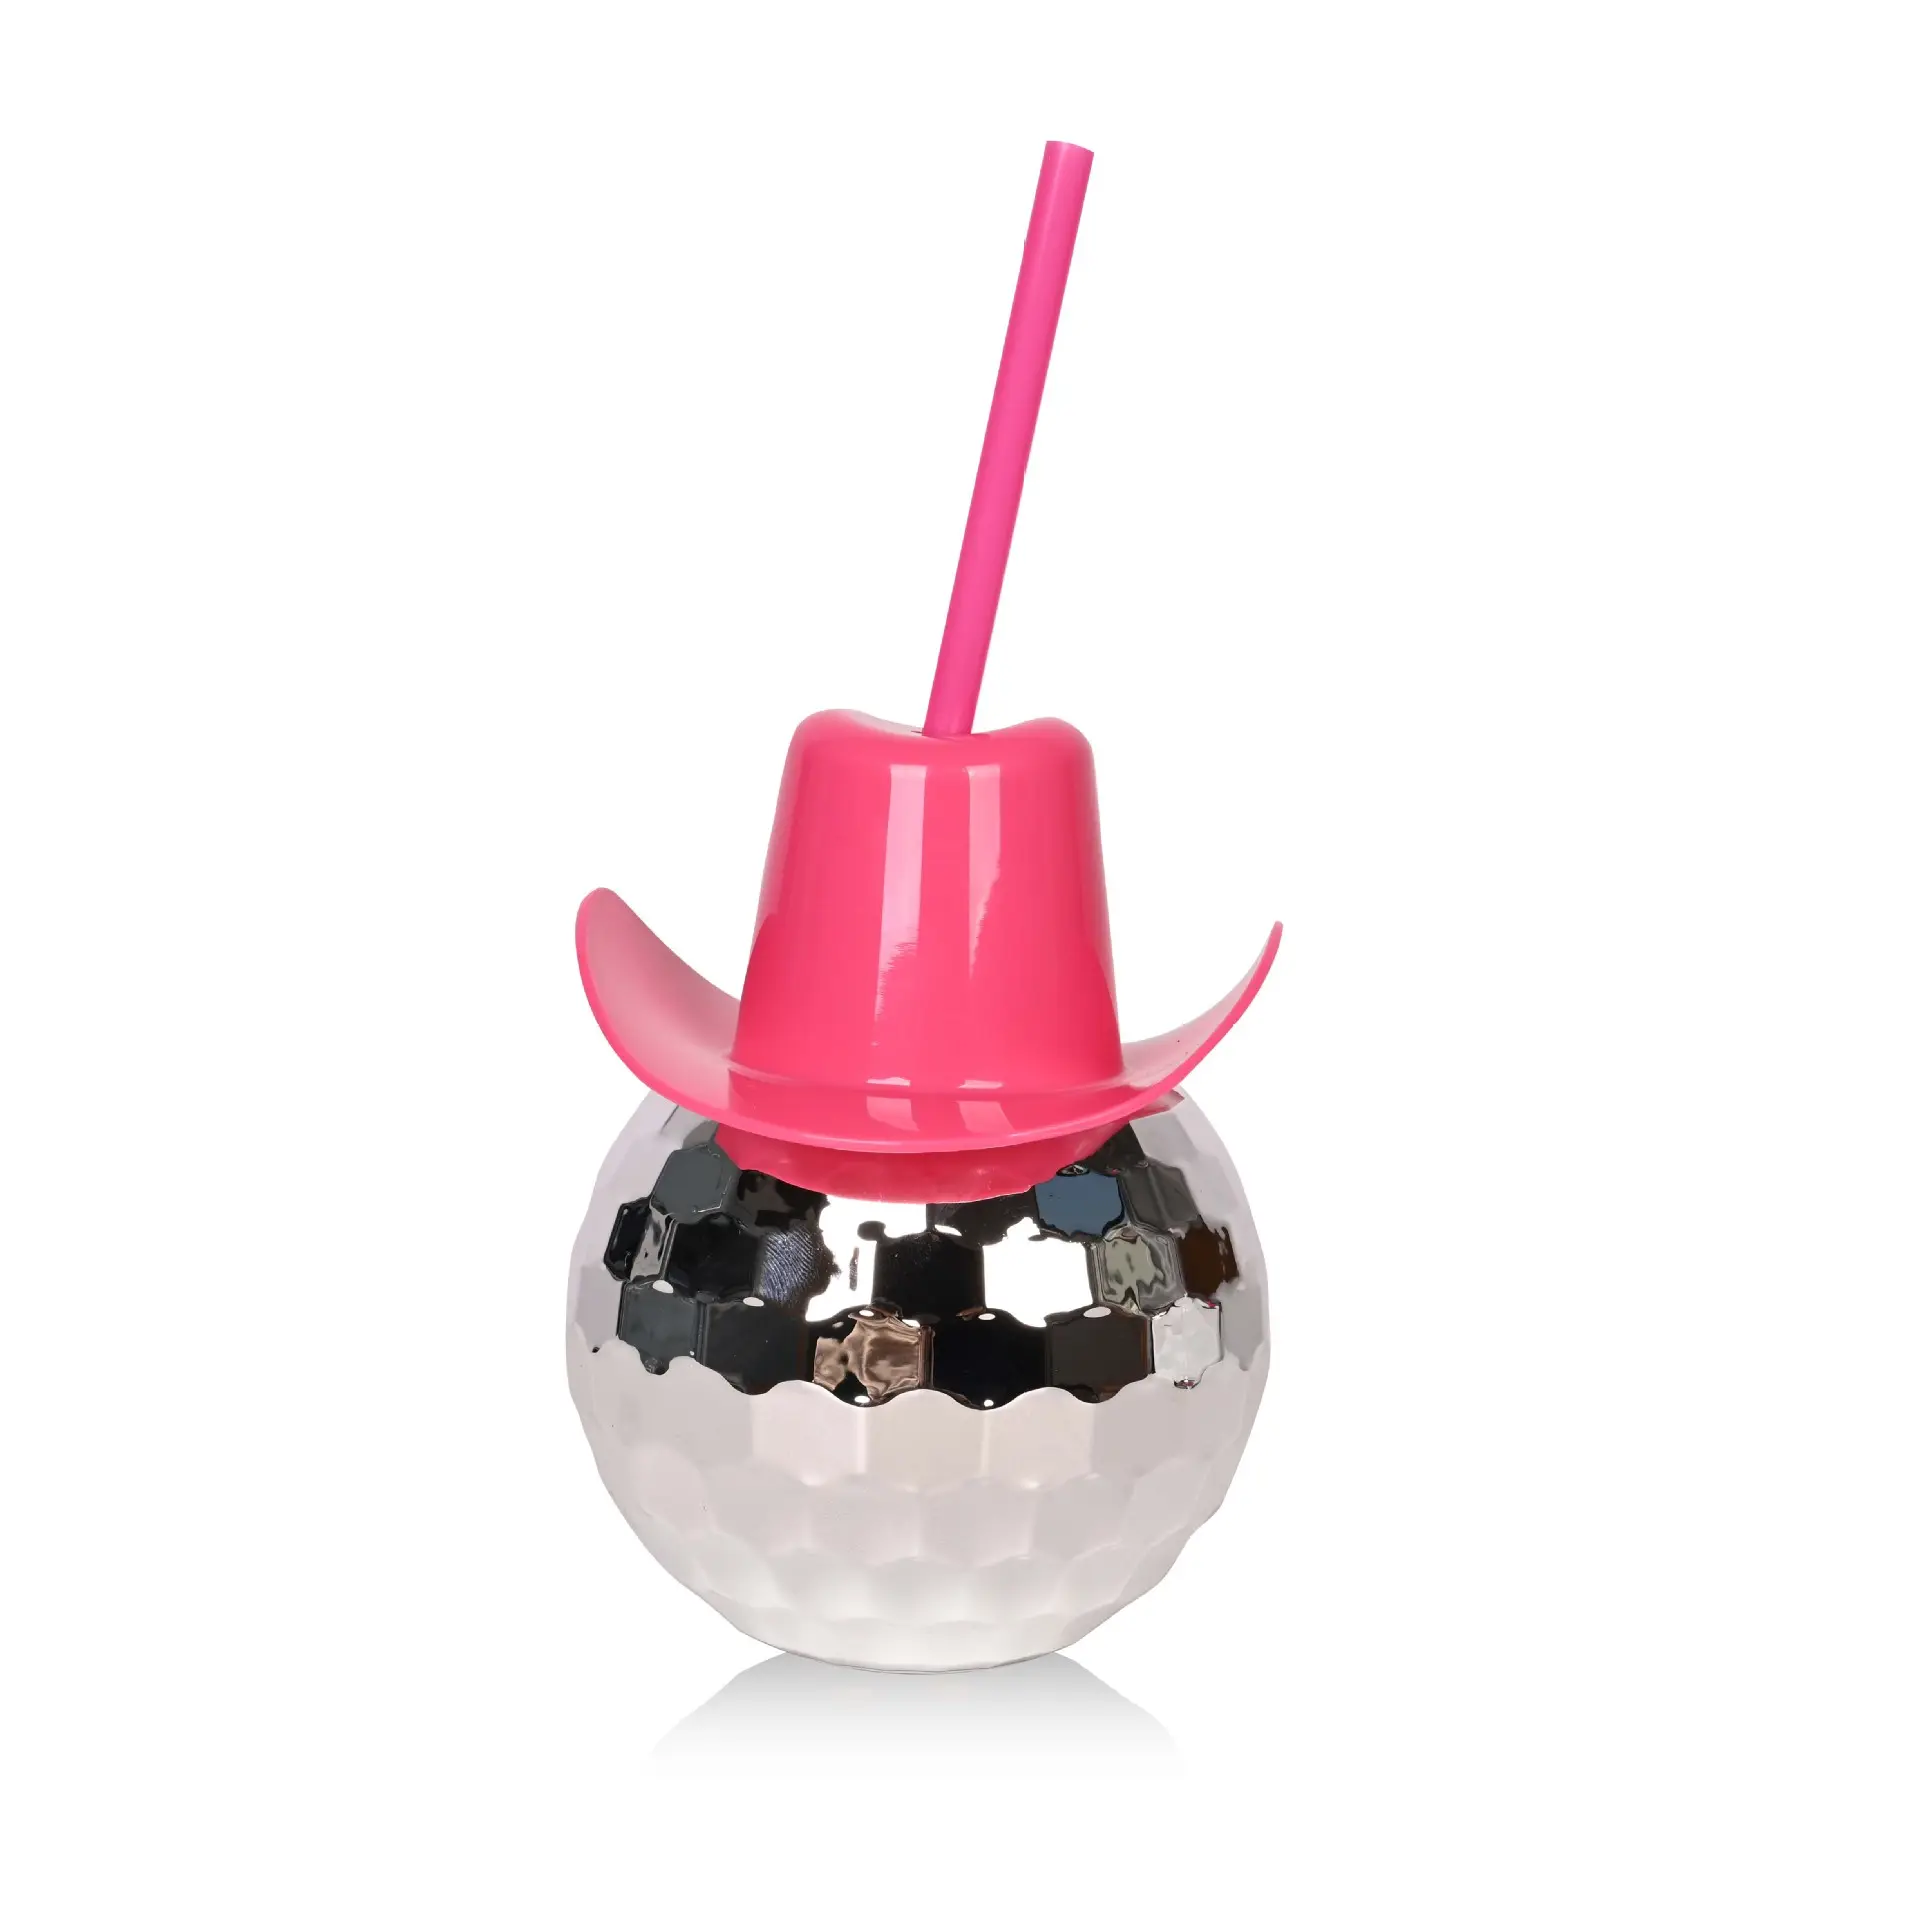 Chapéu de cowboy rosa, copo galvanizado para festa, copo de bola de discoteca, chapéu de cowboy, copo de bar e discoteca, novidade